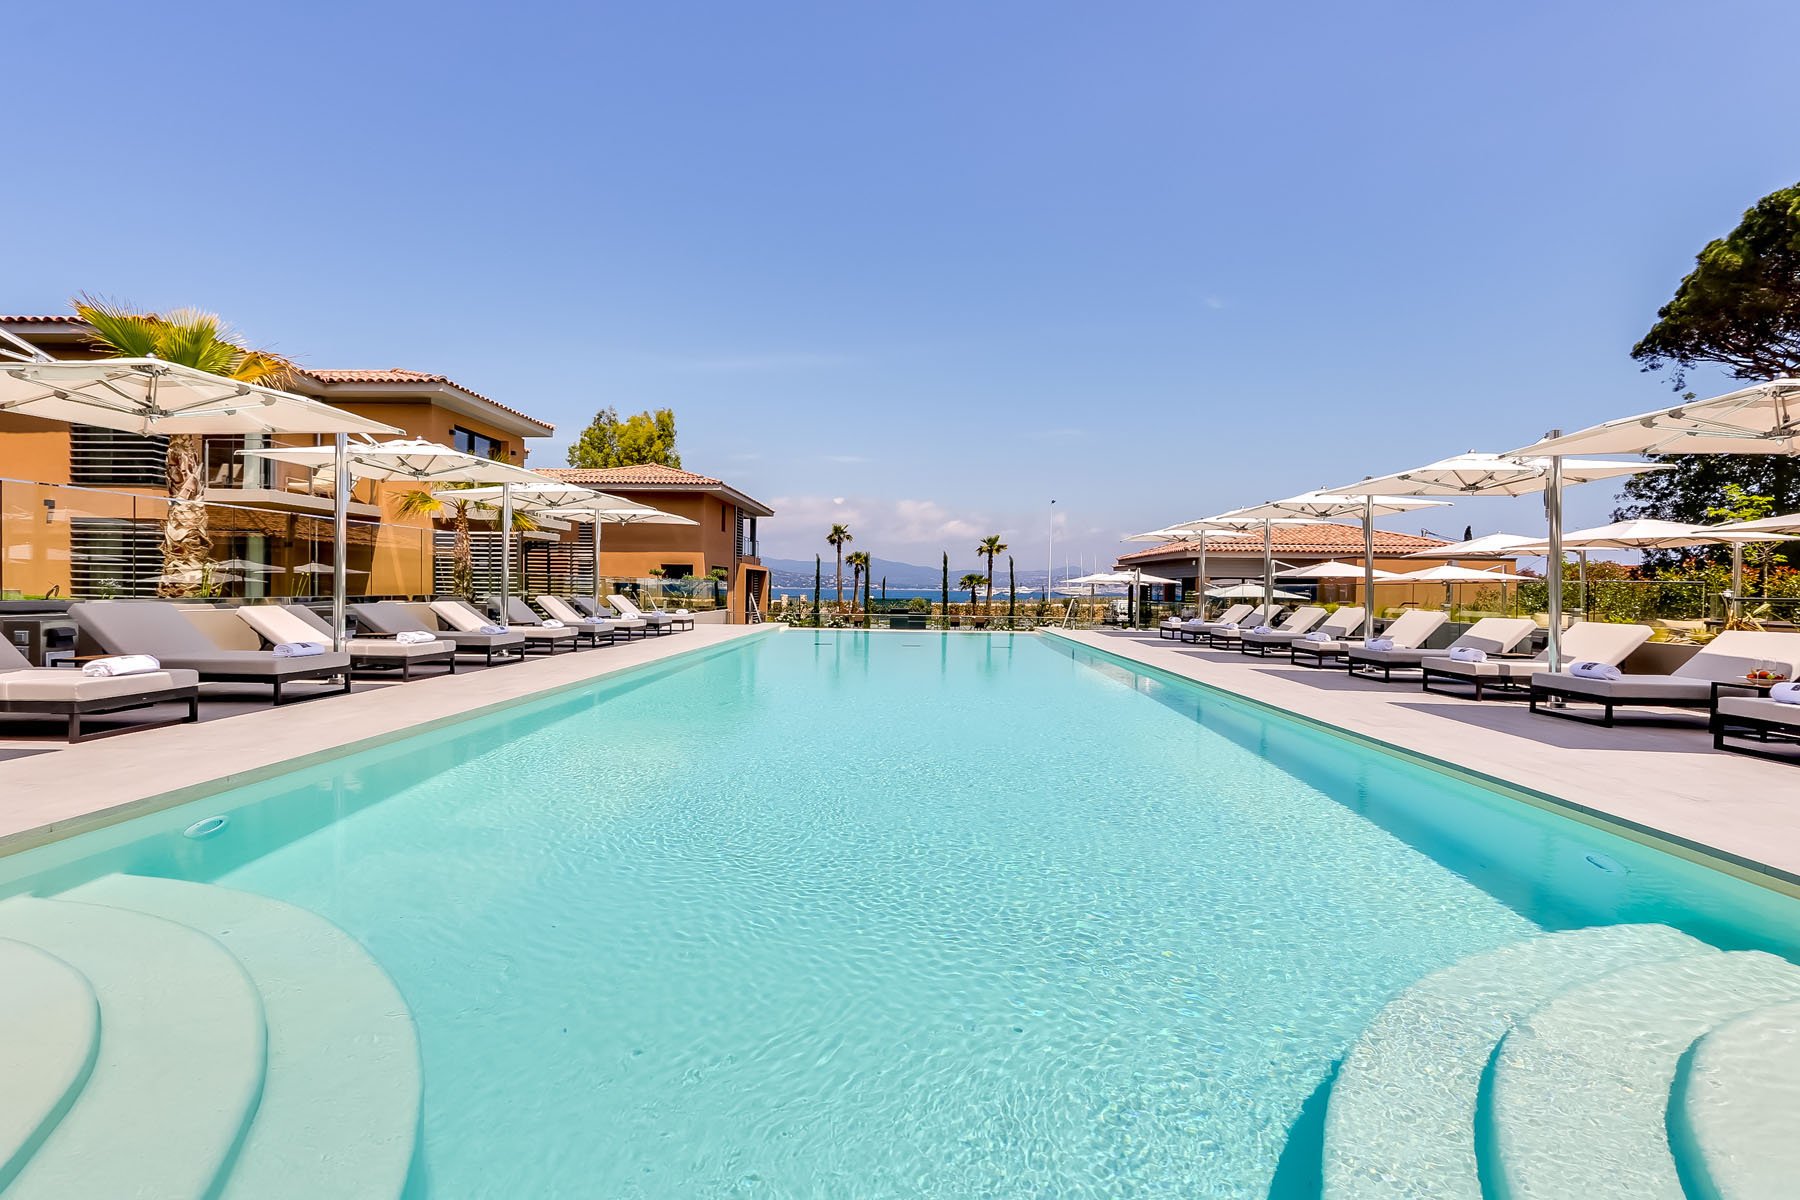 Piscine exterieure - Kube Hotel Saint-Tropez - Côte d'Azur